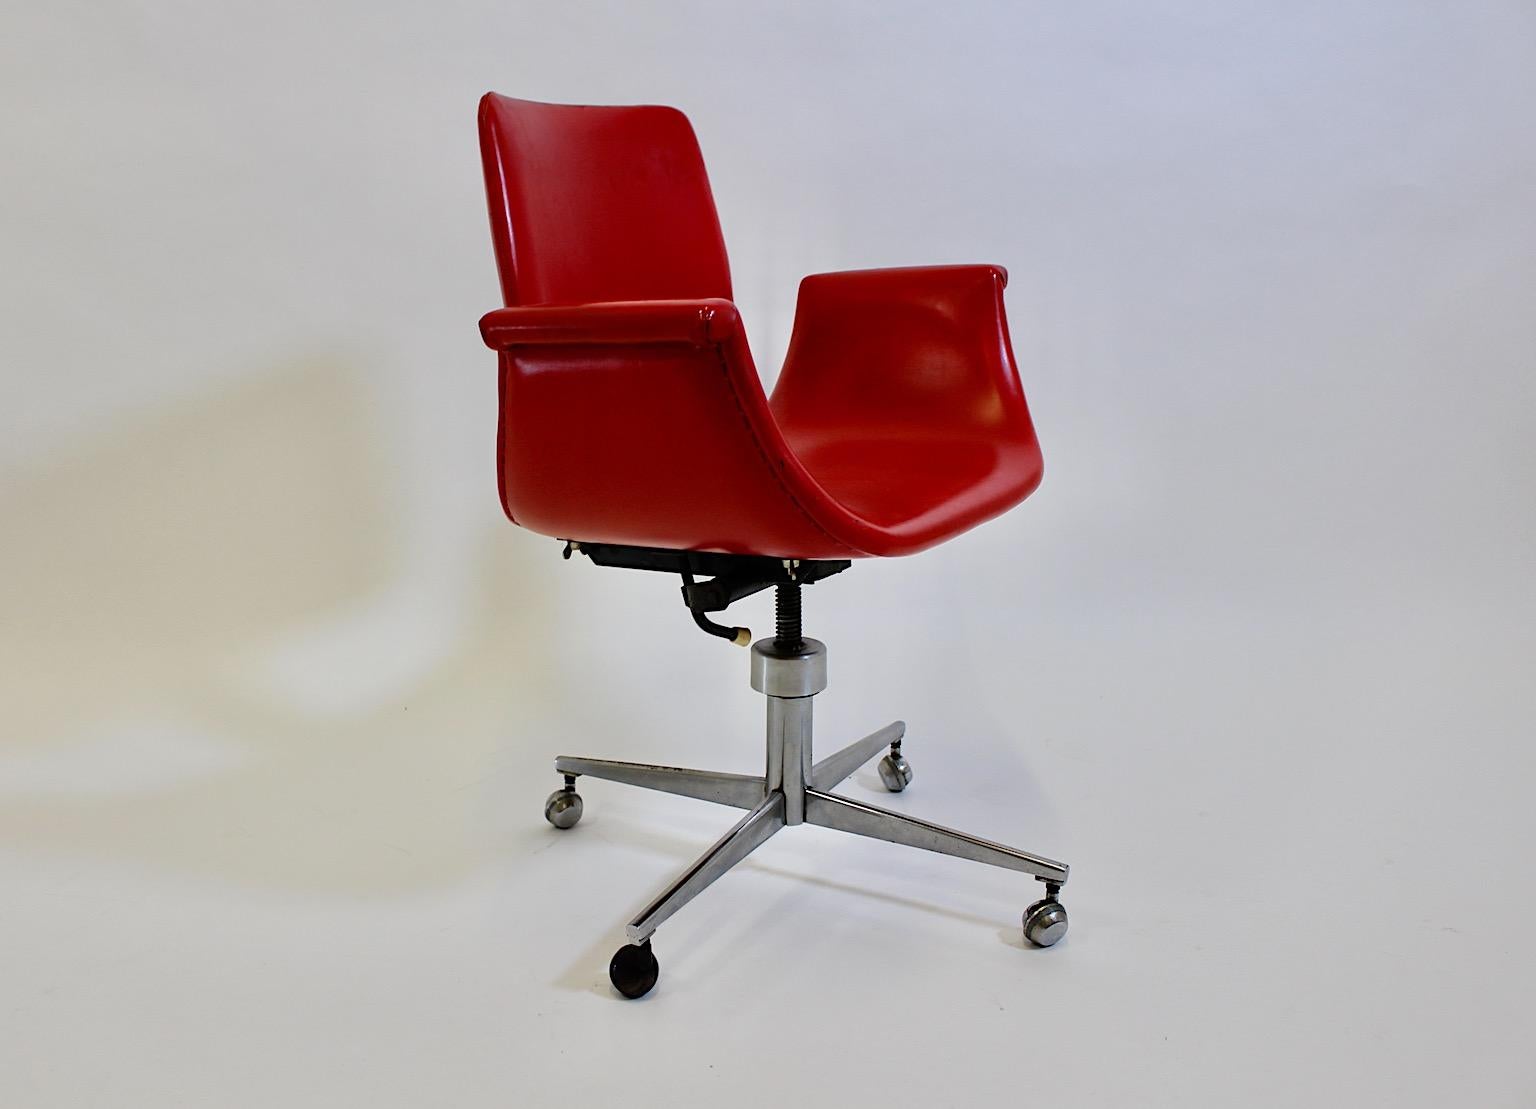 Space Age vintage Bürostuhl oder Schreibtischstuhl aus rotem Kunstleder und Chrom in Tulpenform 1960er Jahre.
Ein fabelhafter Vintage-Bürostuhl oder -Schreibtischstuhl mit roter, geschwungener Sitzschale in ikonischer Tulpenform, bezogen mit rotem